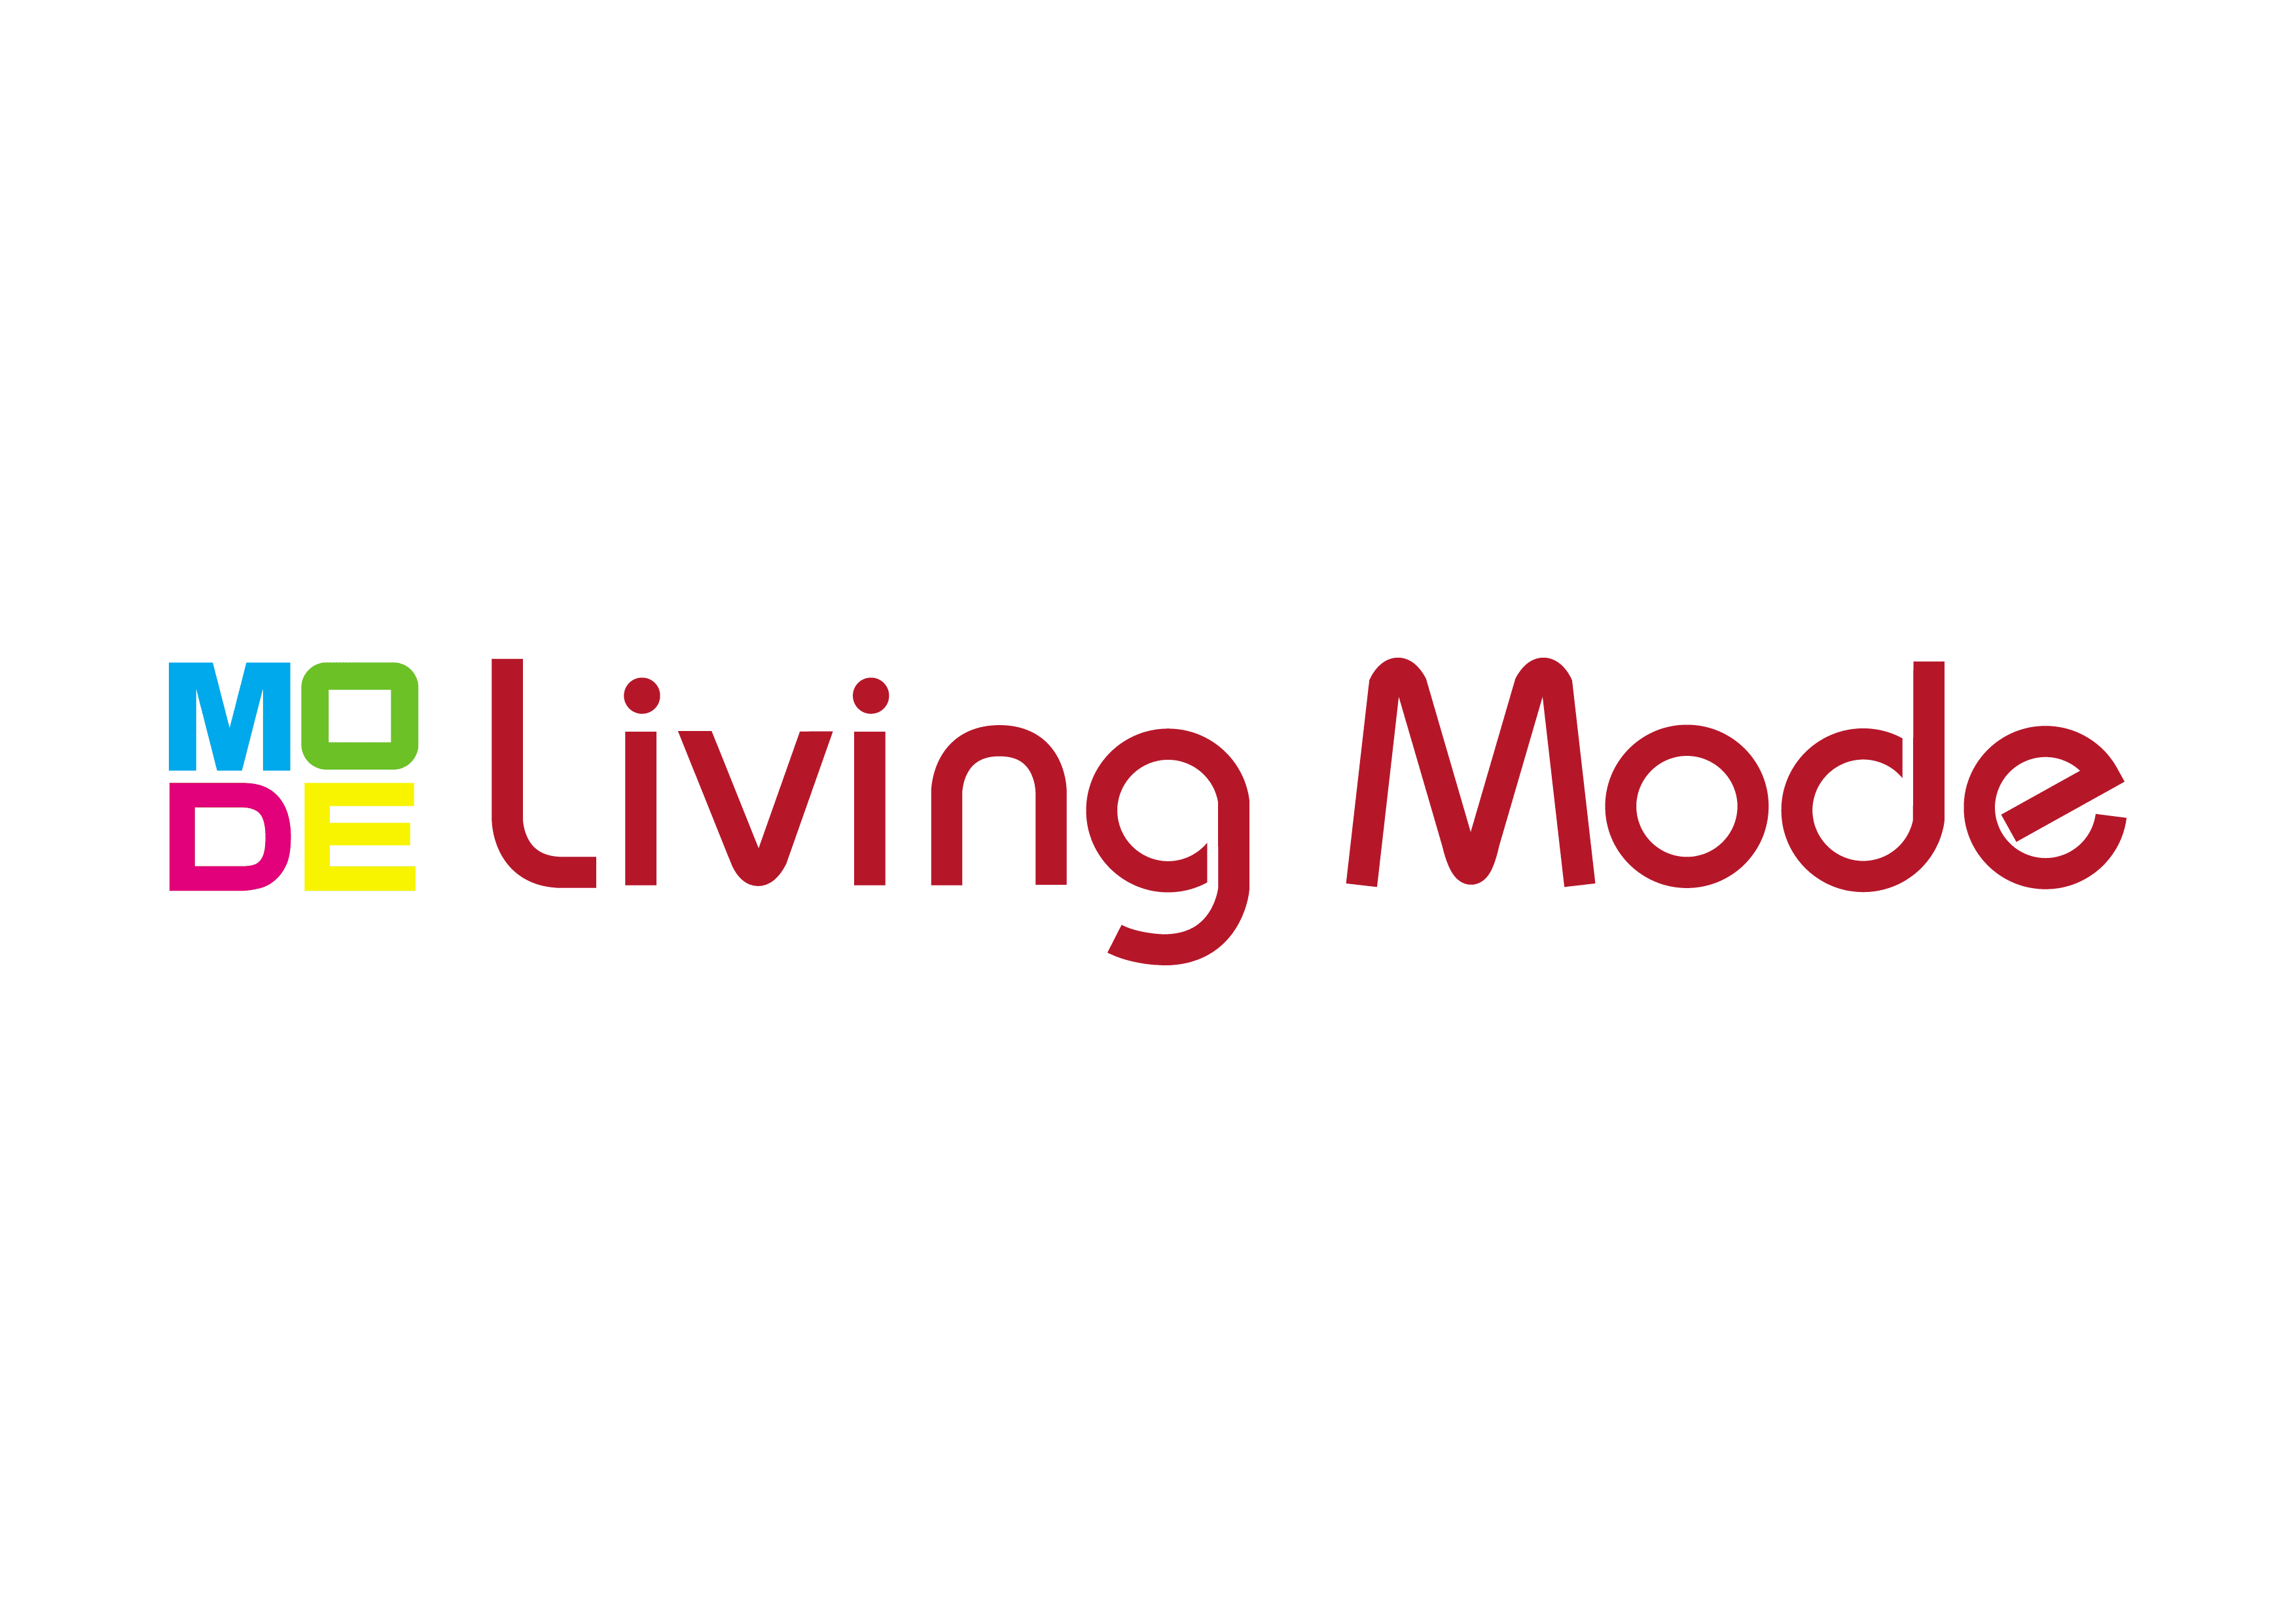 Living Mode logo